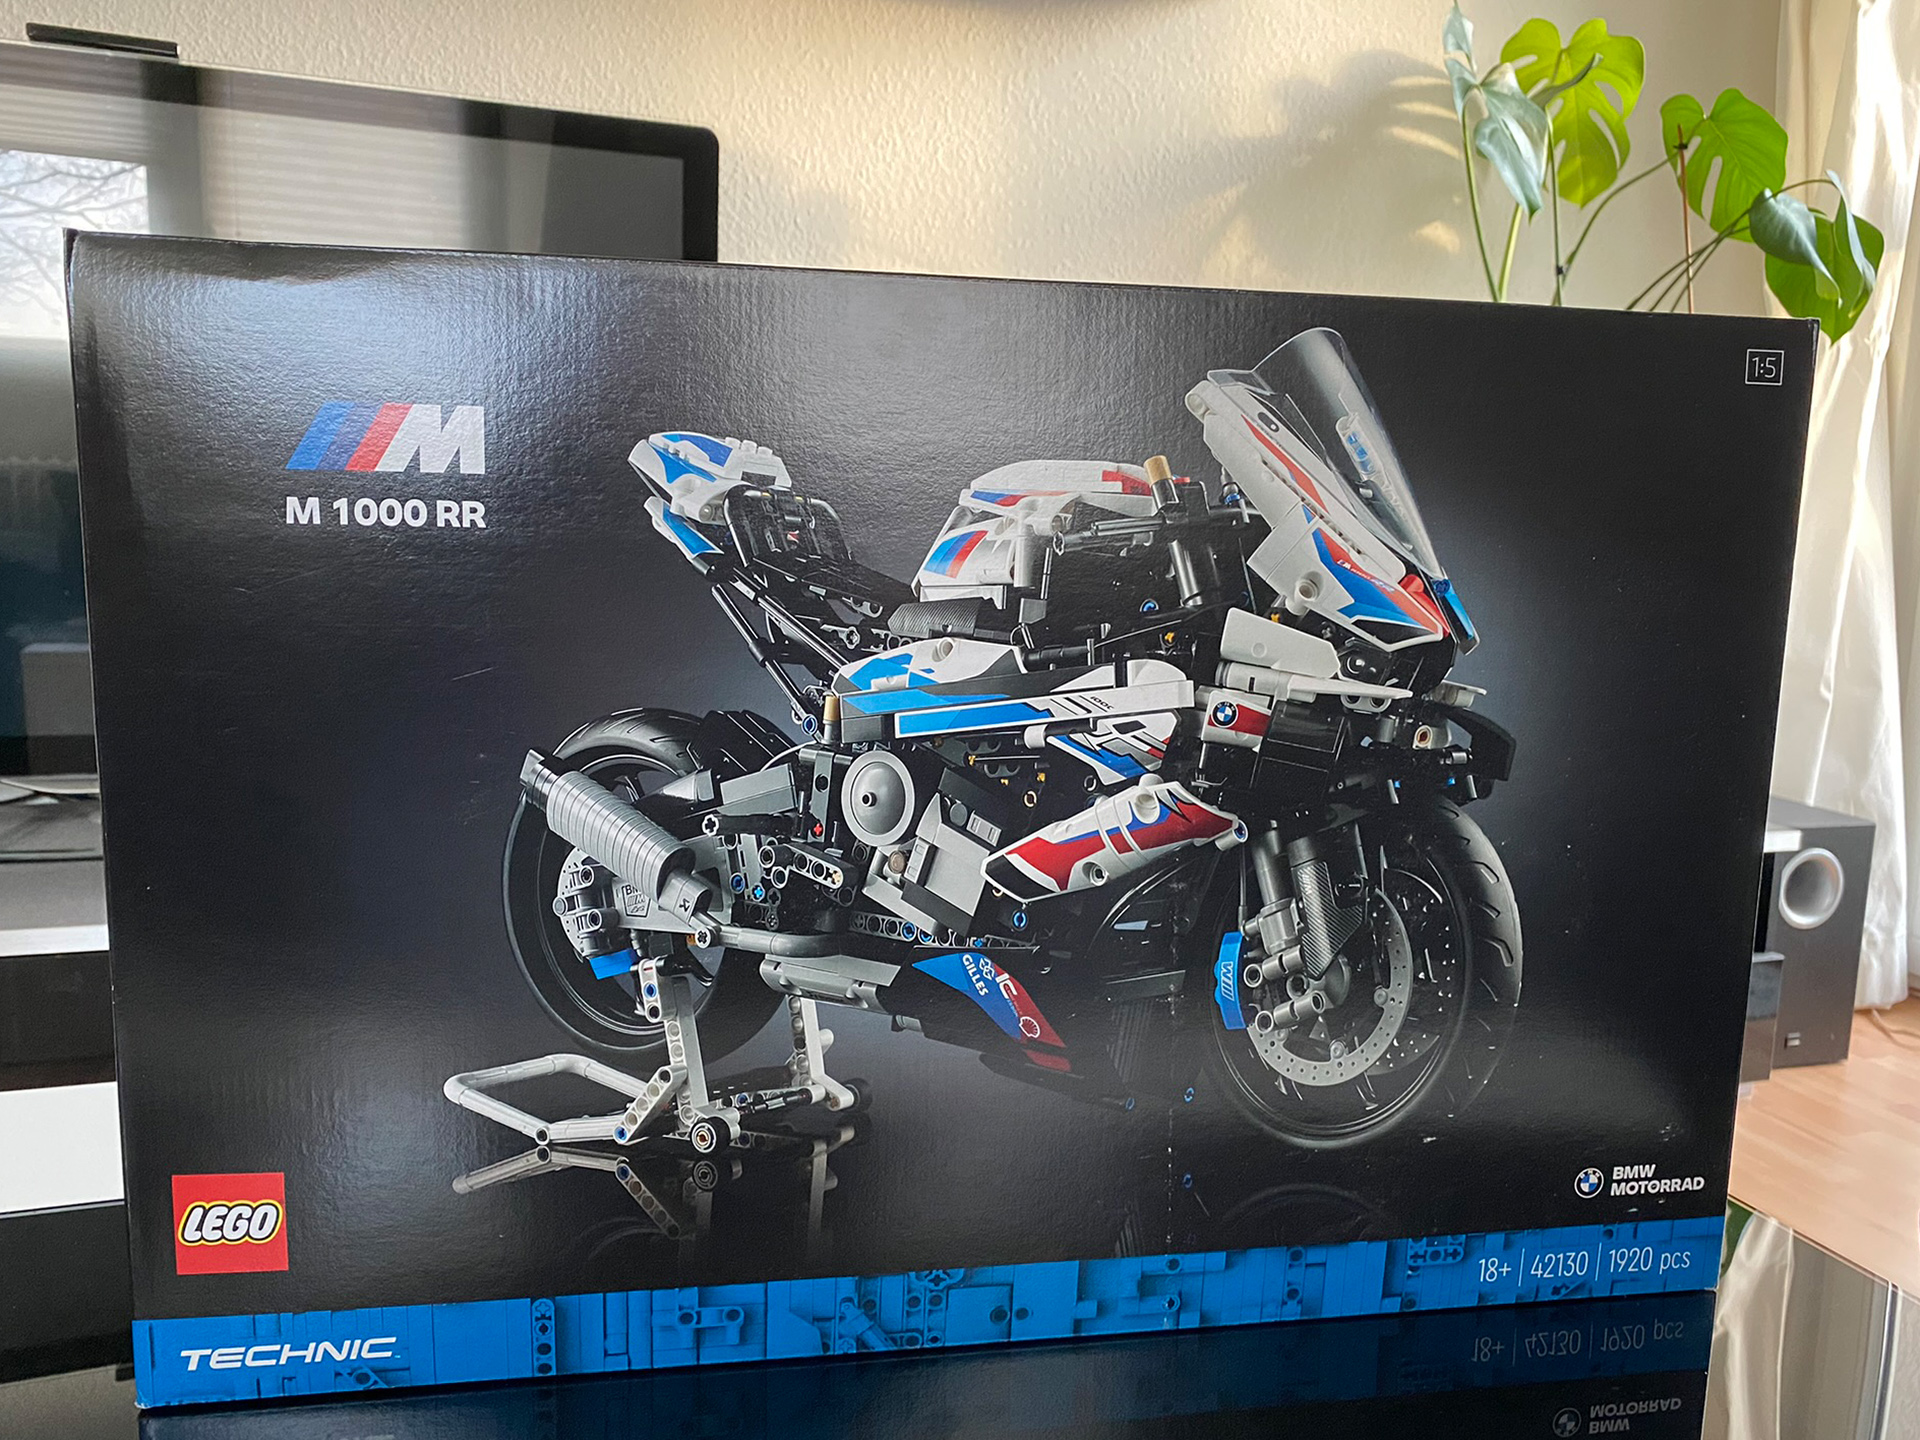 Lego Technic Motorrad neu in originalem Verpackung.